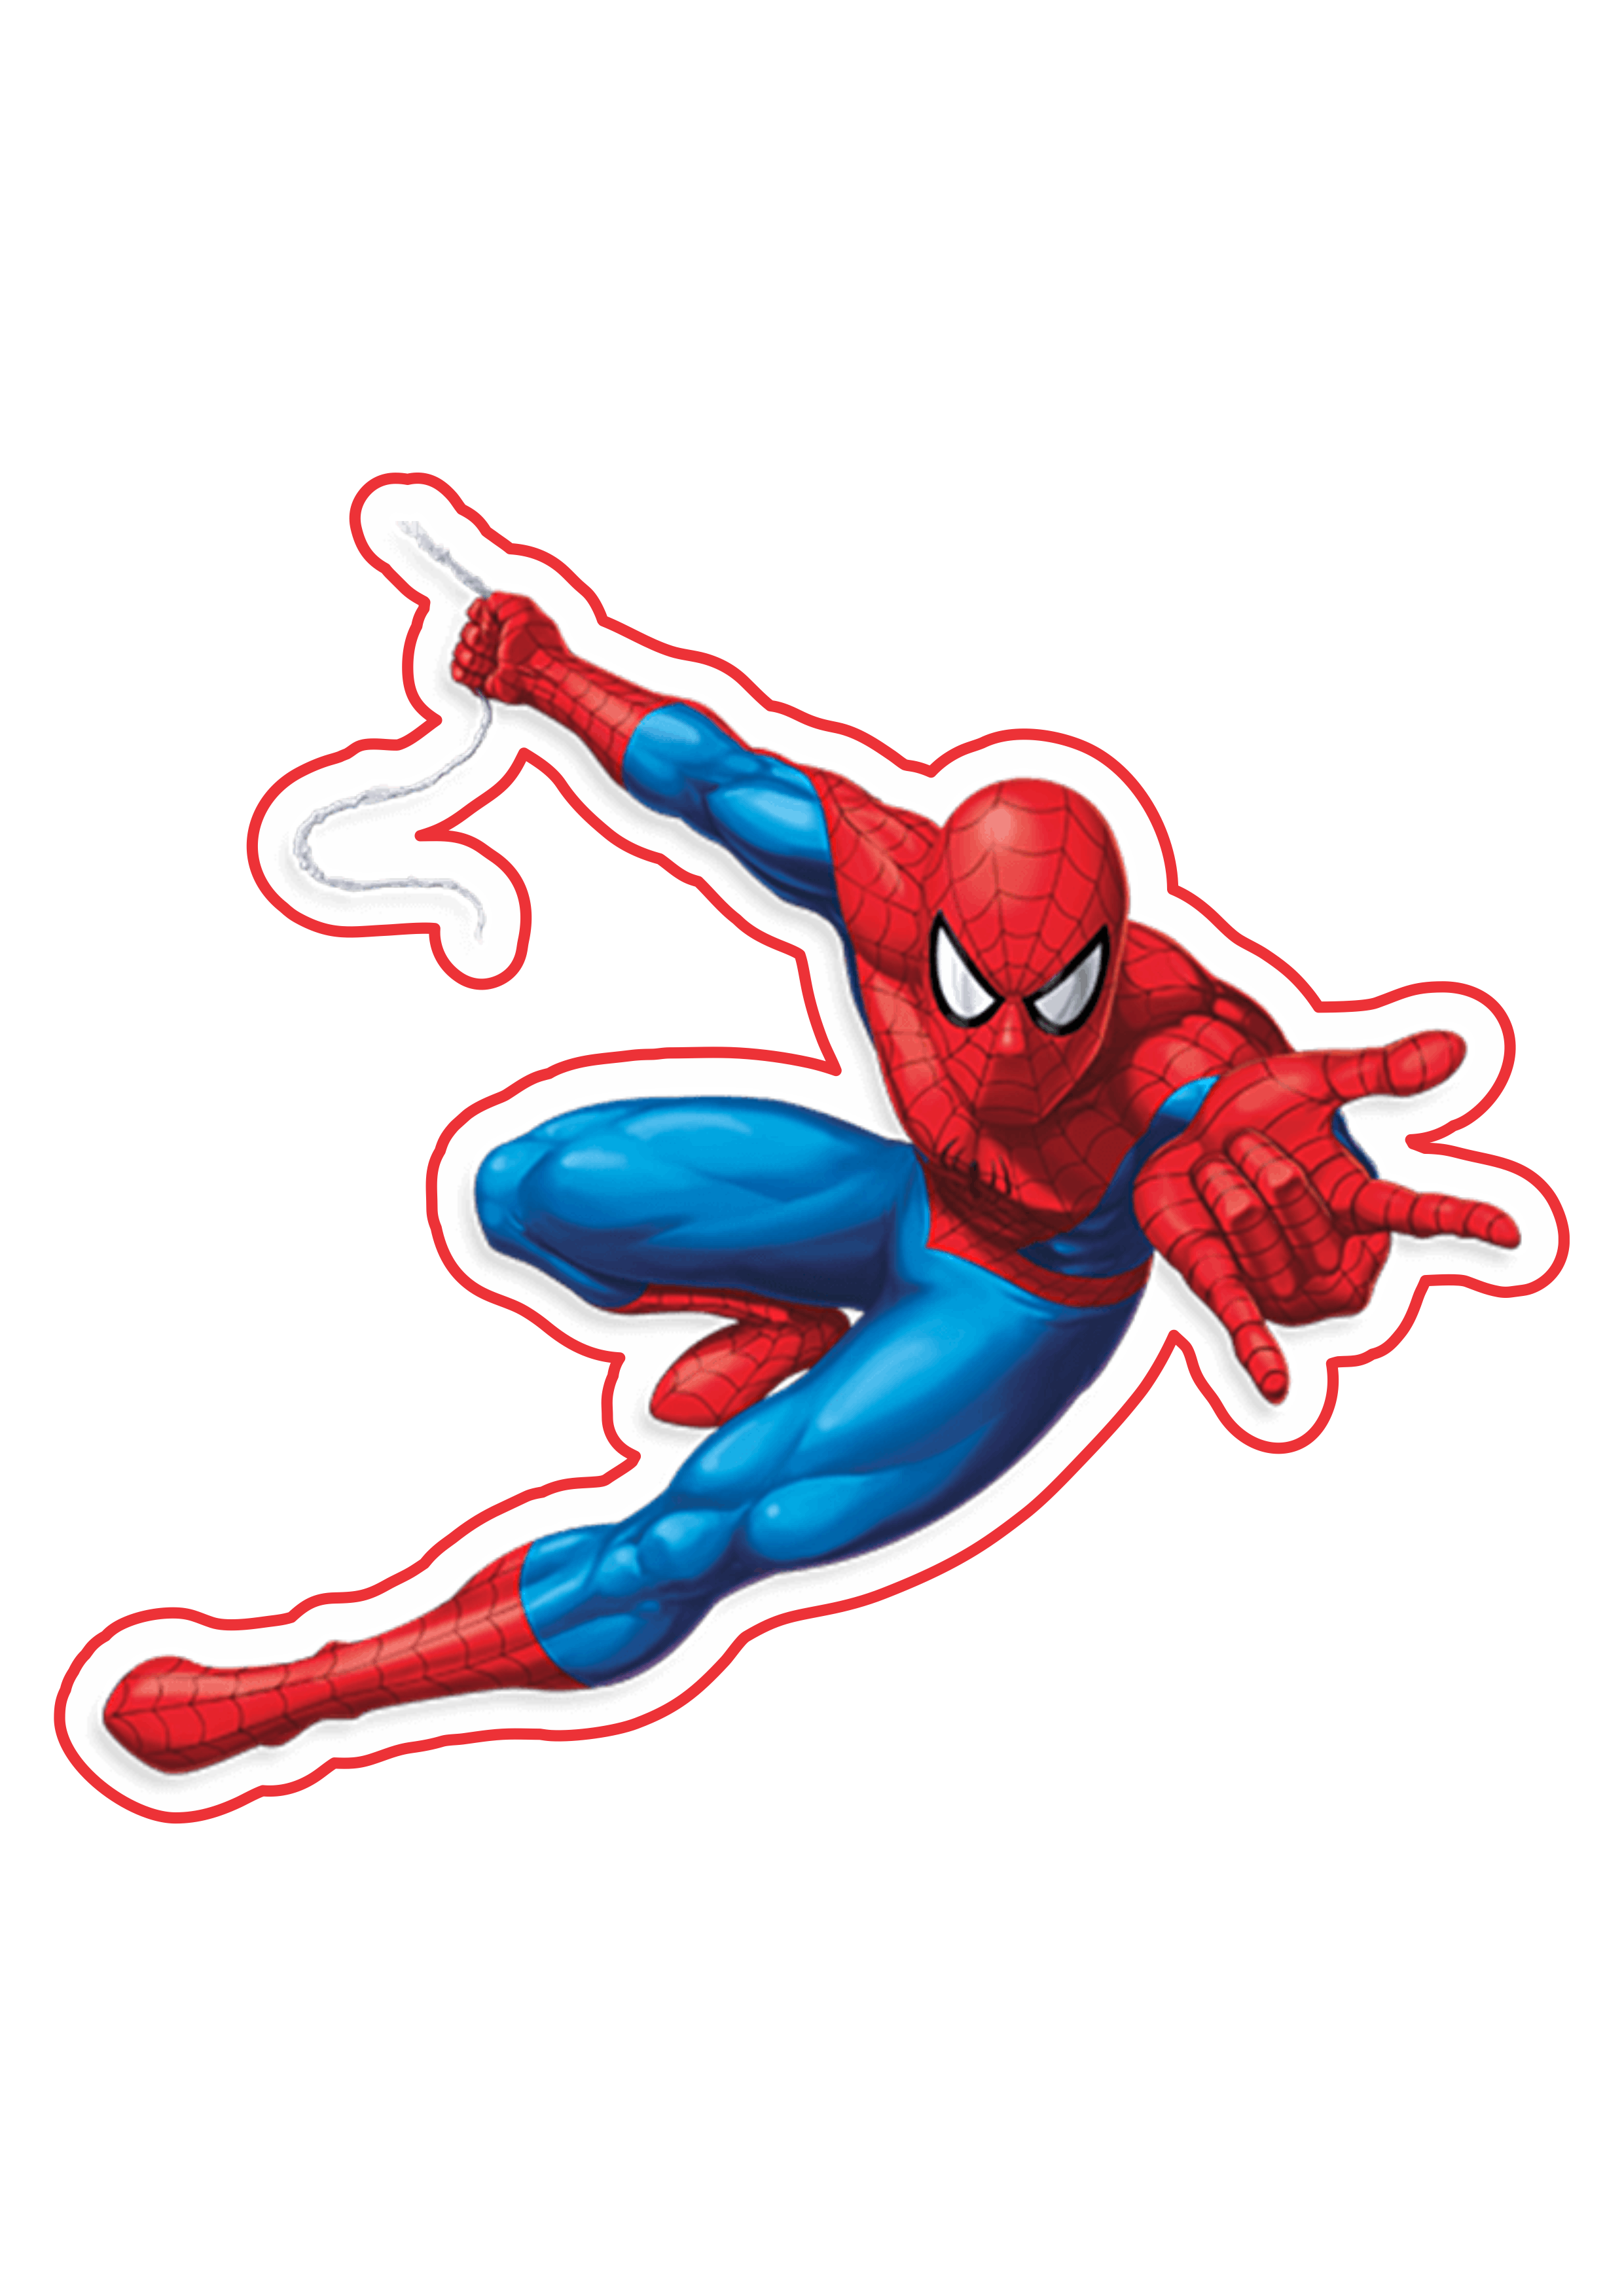 Spider-man clássico imagem fundo transparente marvel super heróis arte conceitual png